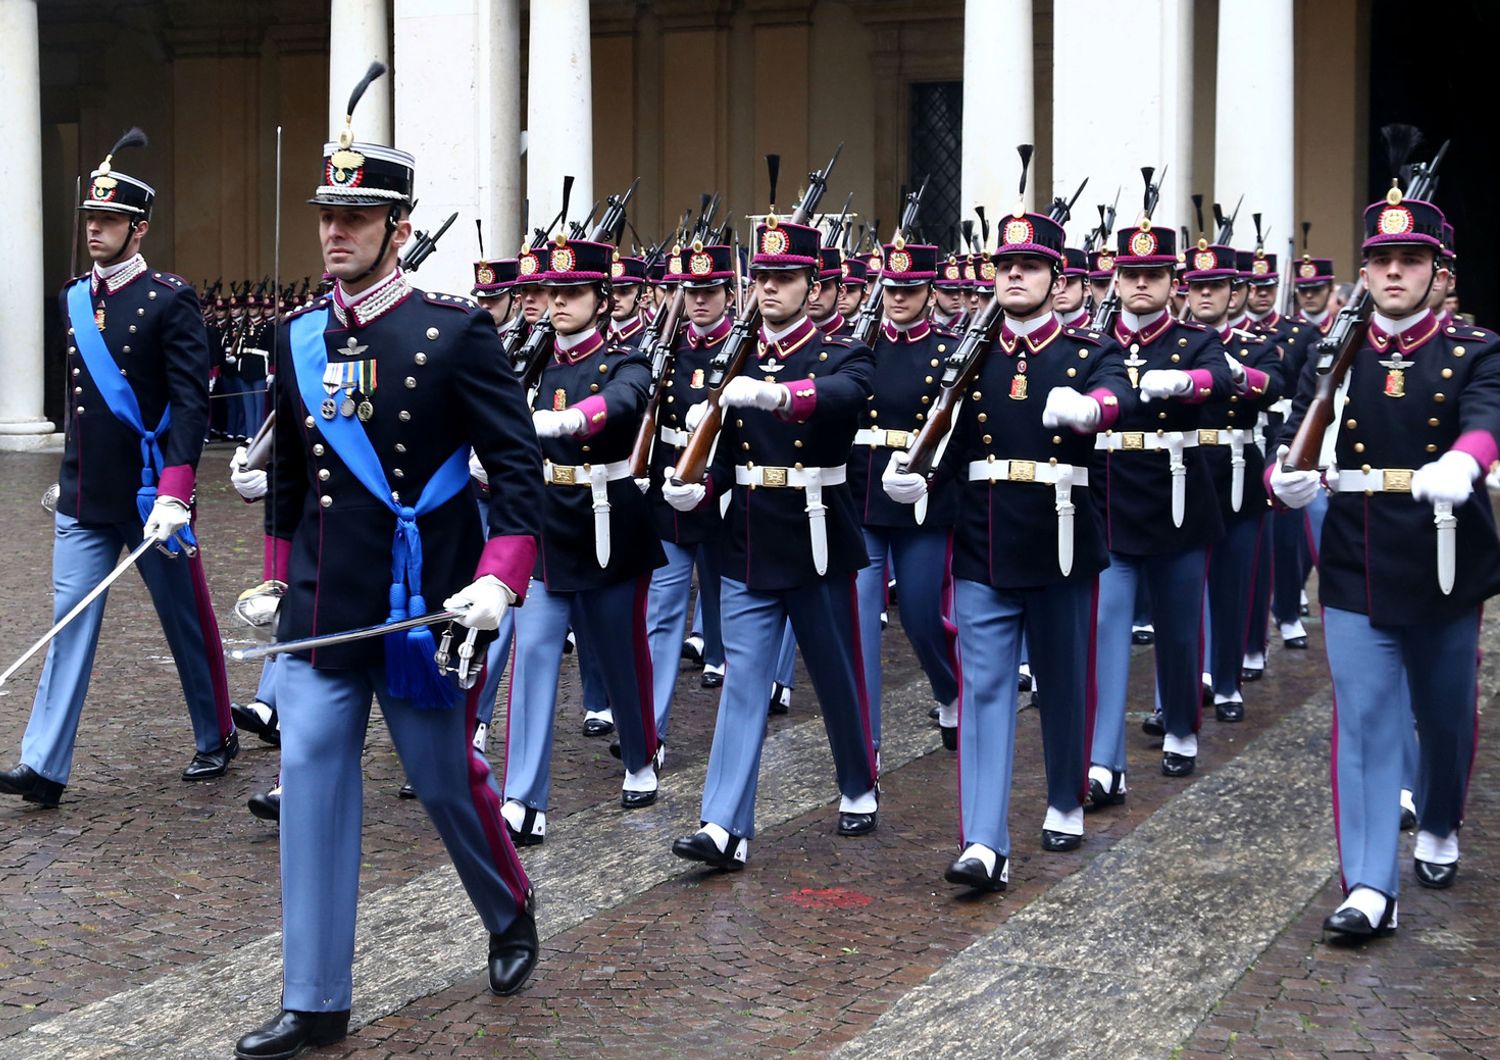 Allievi ufficiali marciano nel cortile d'onore dell'Accademia Militare di Modena